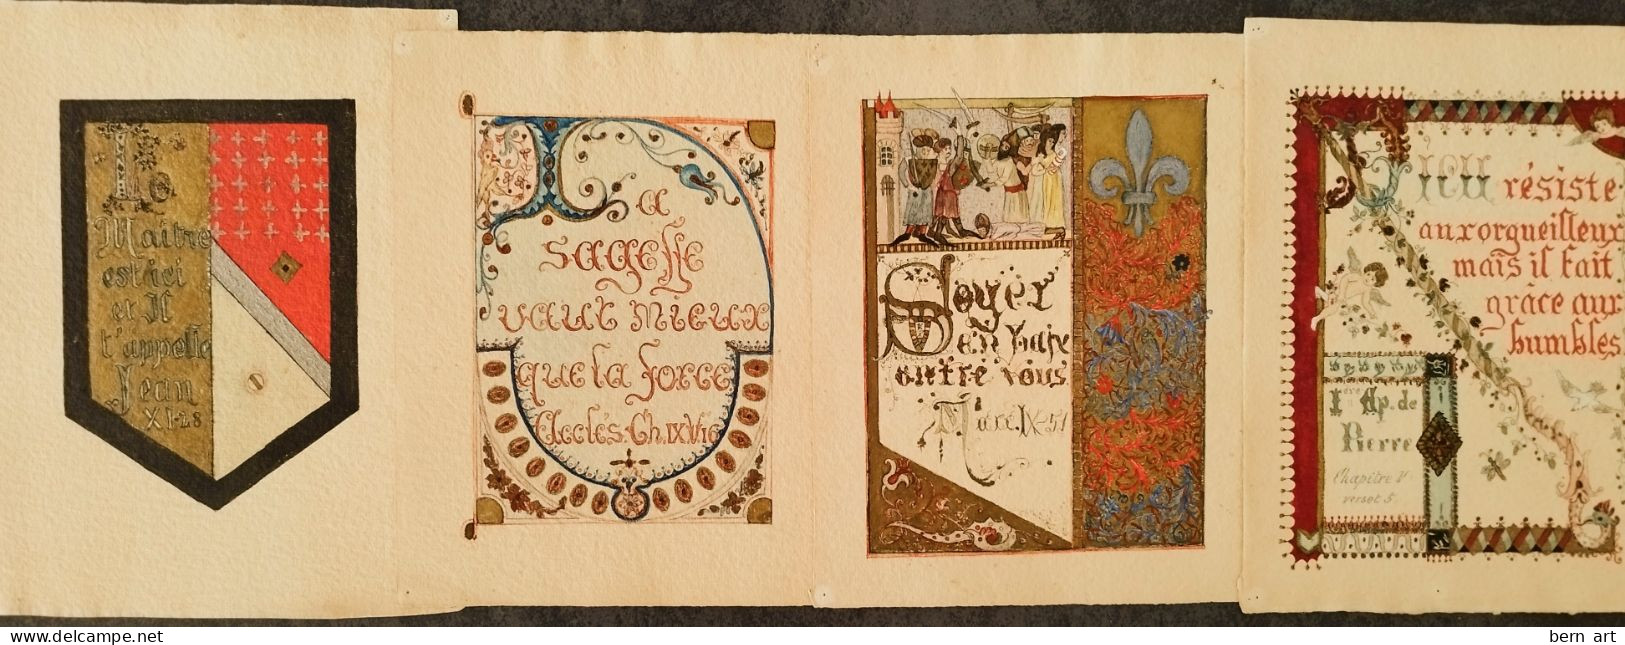 4 Enluminures Fin XIXè Sur Papier J. WHATMAN. Fond D'Atelier Artiste B.F. (Berthe Flournoy) Vers 1900 (Genève) - Watercolours